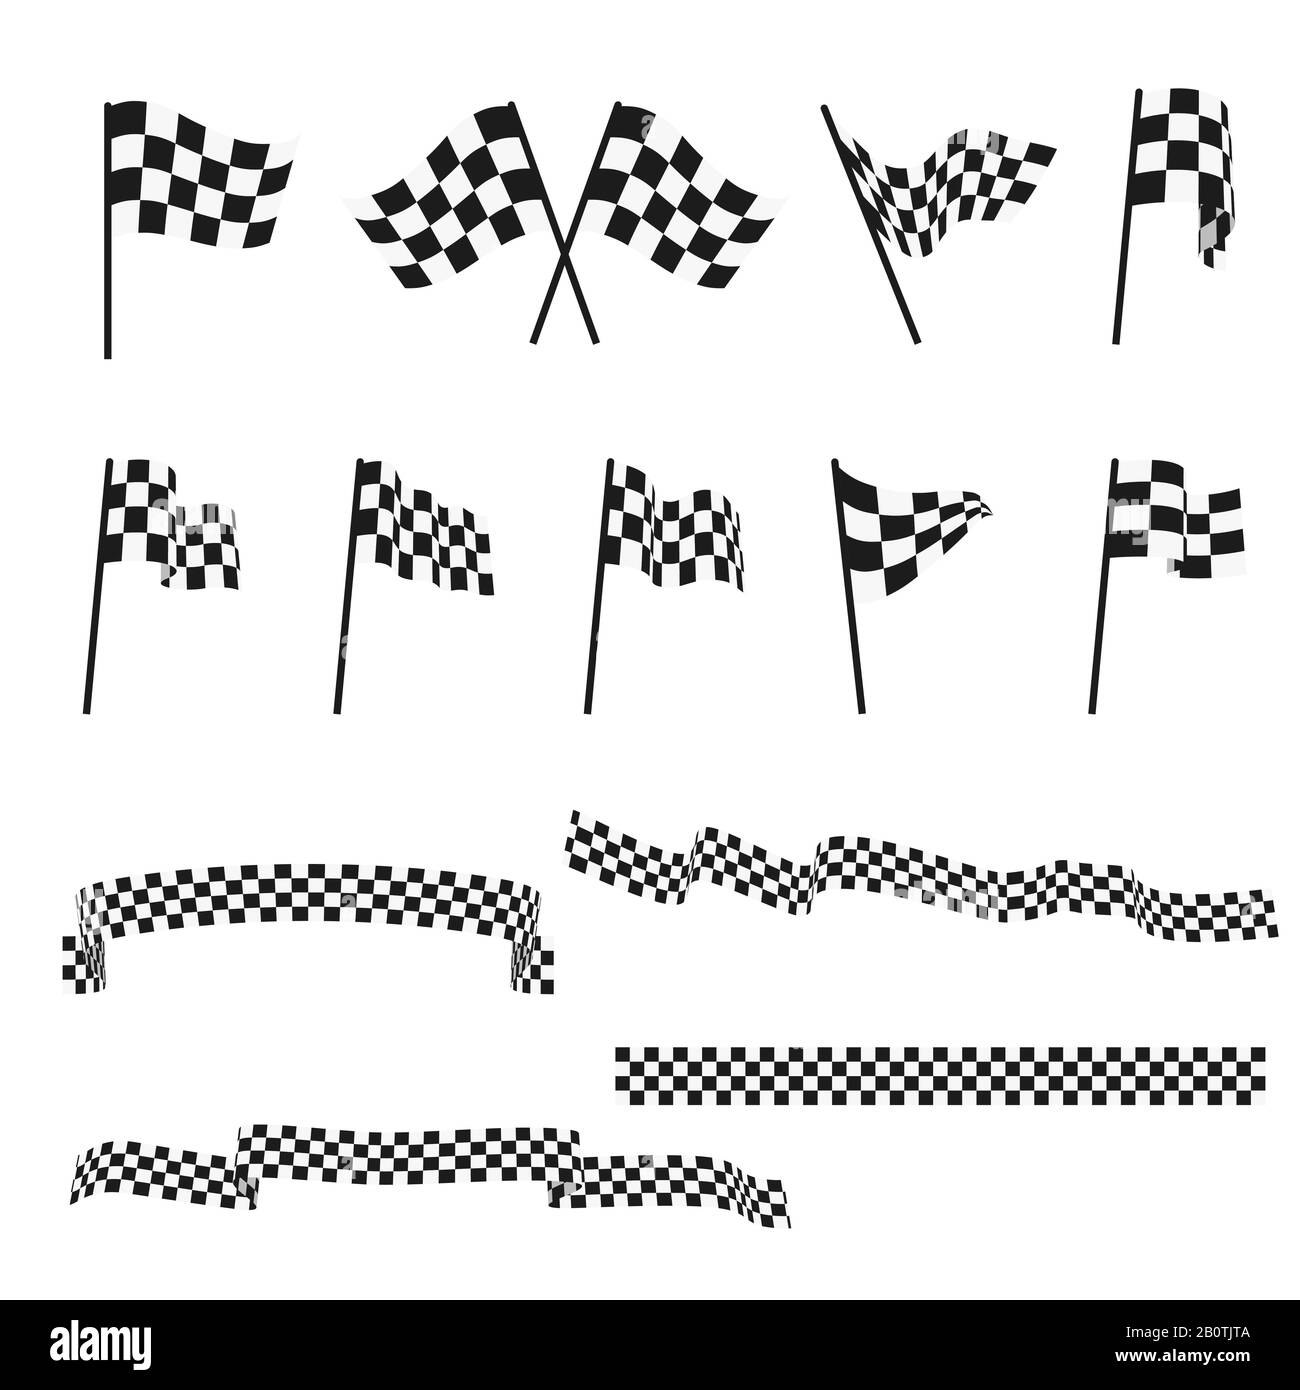 Bandiere auto a scacchi in bianco e nero e set di vettori di finishing tape. Bandiera sportiva per la gara di gara, vincitore controllare l'illustrazione della bandiera Illustrazione Vettoriale